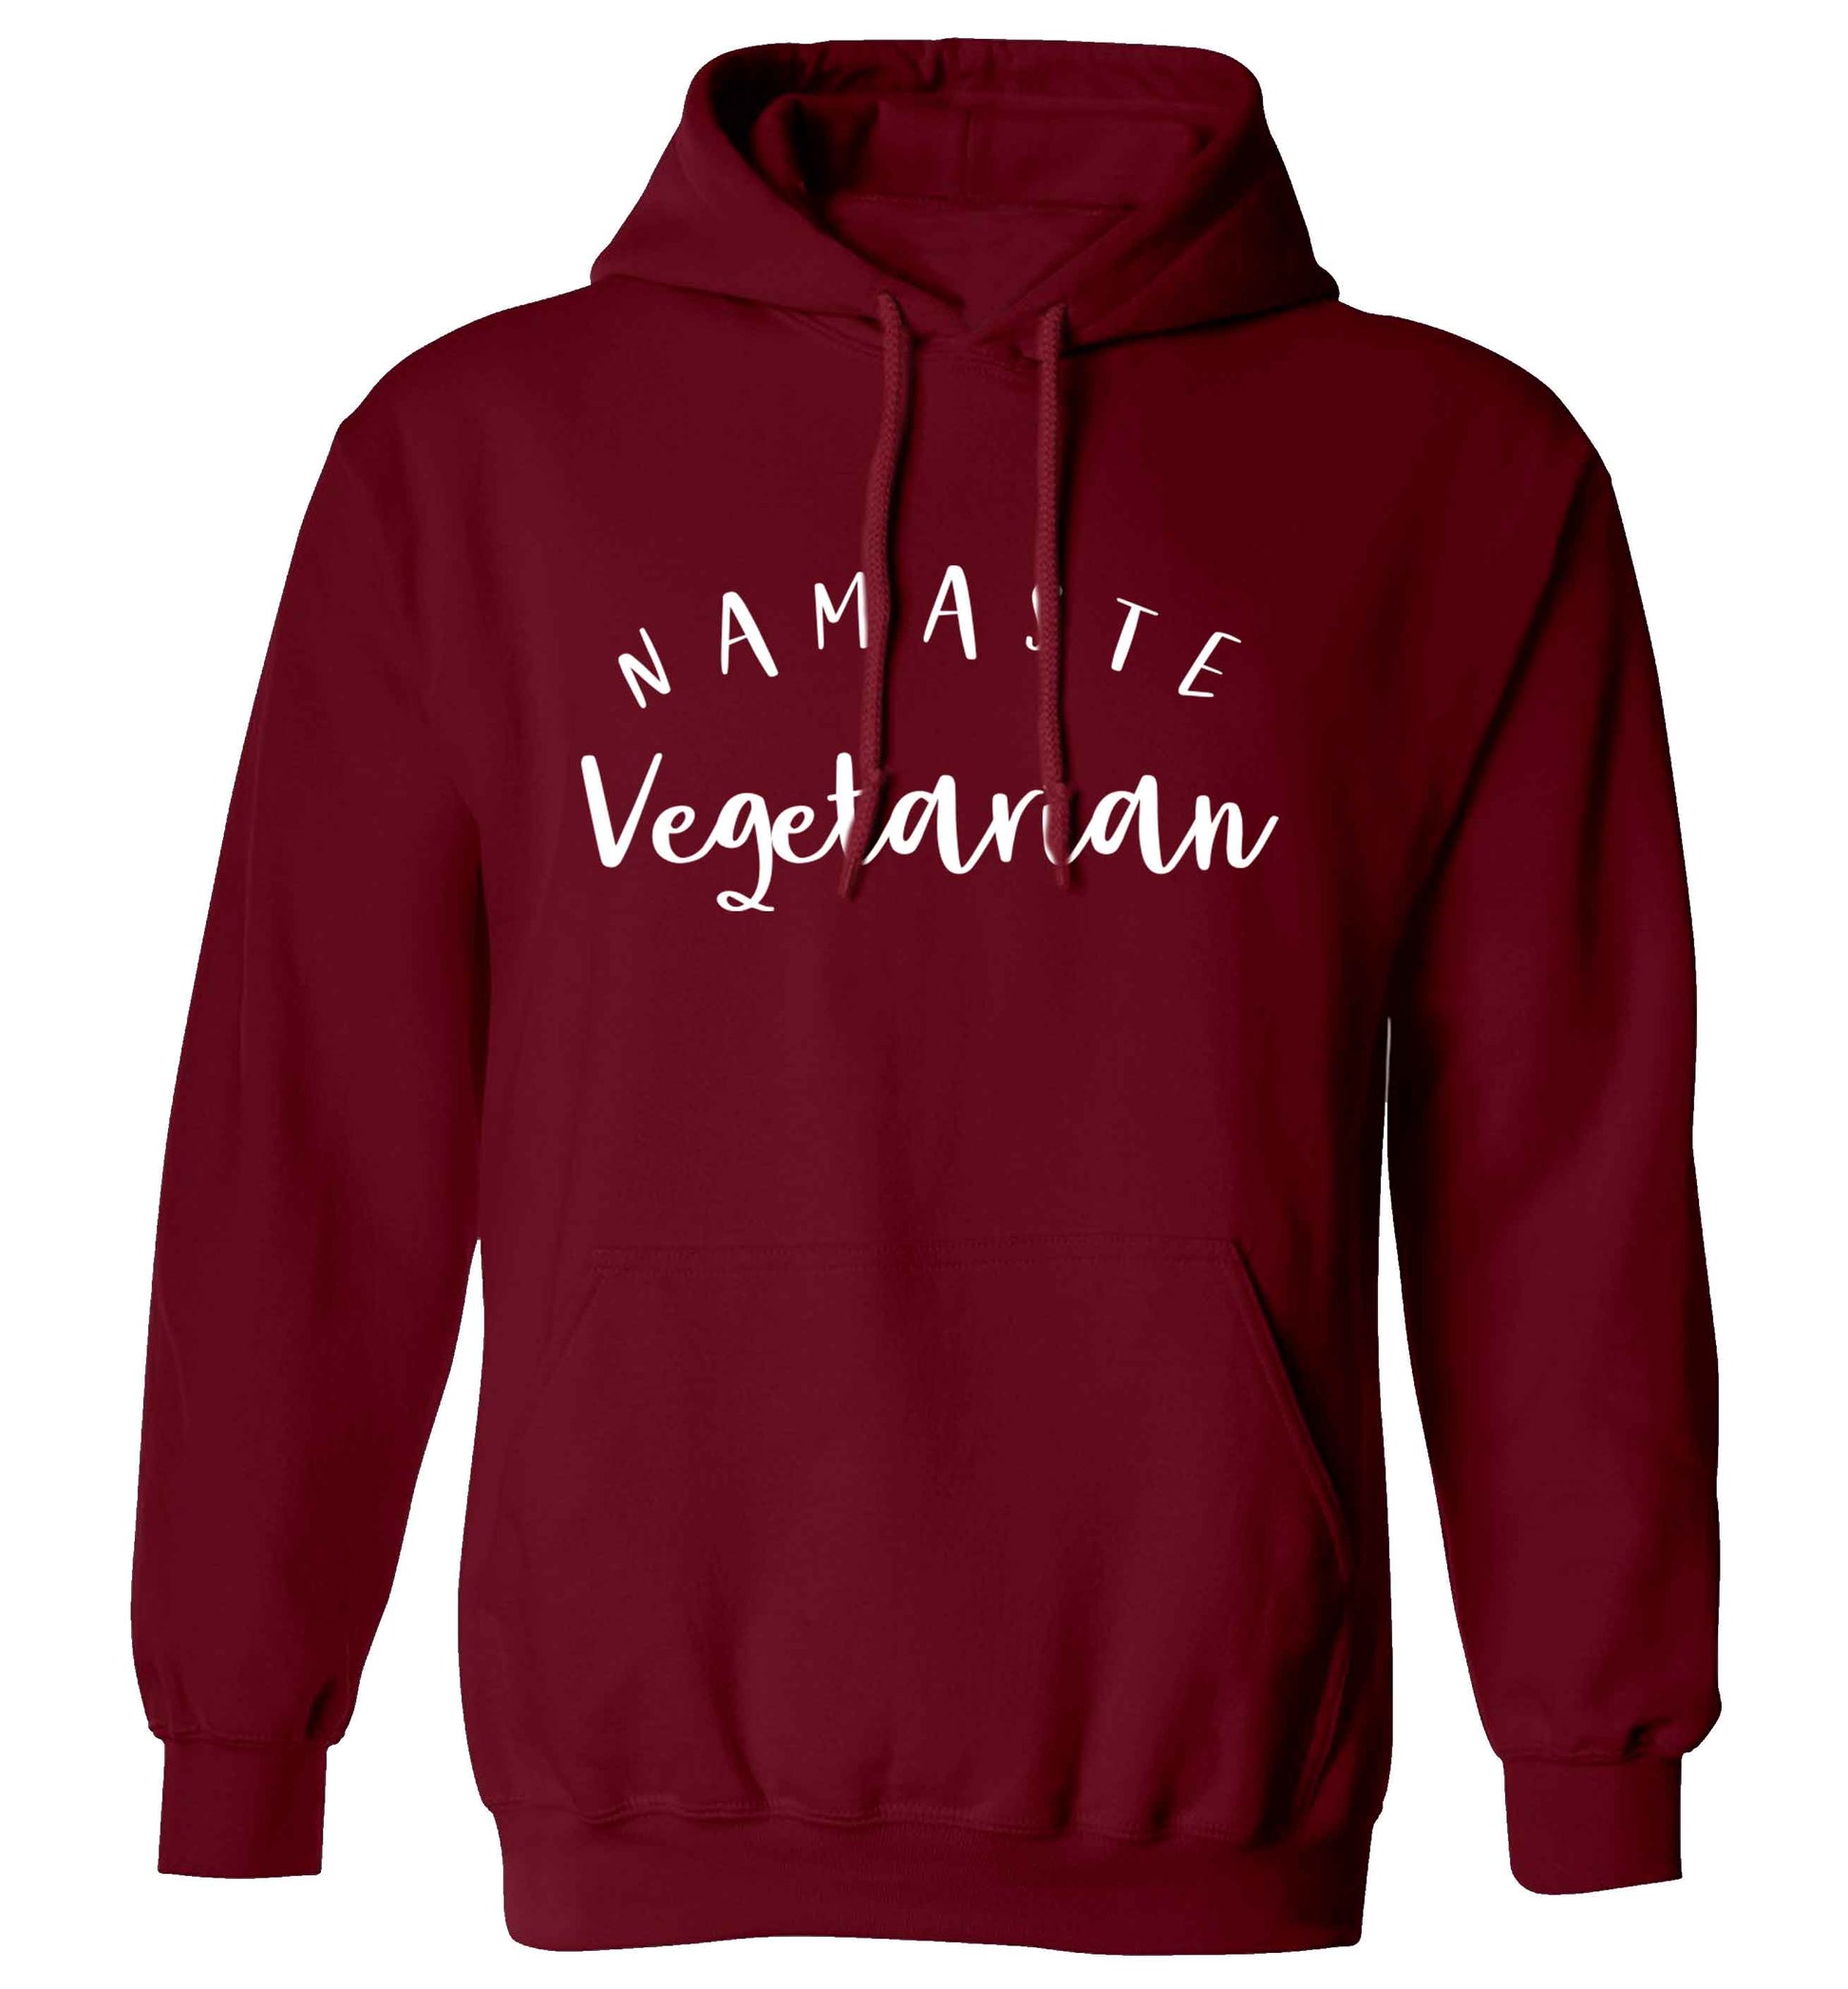 Namaste vegetarian adults unisex maroon hoodie 2XL